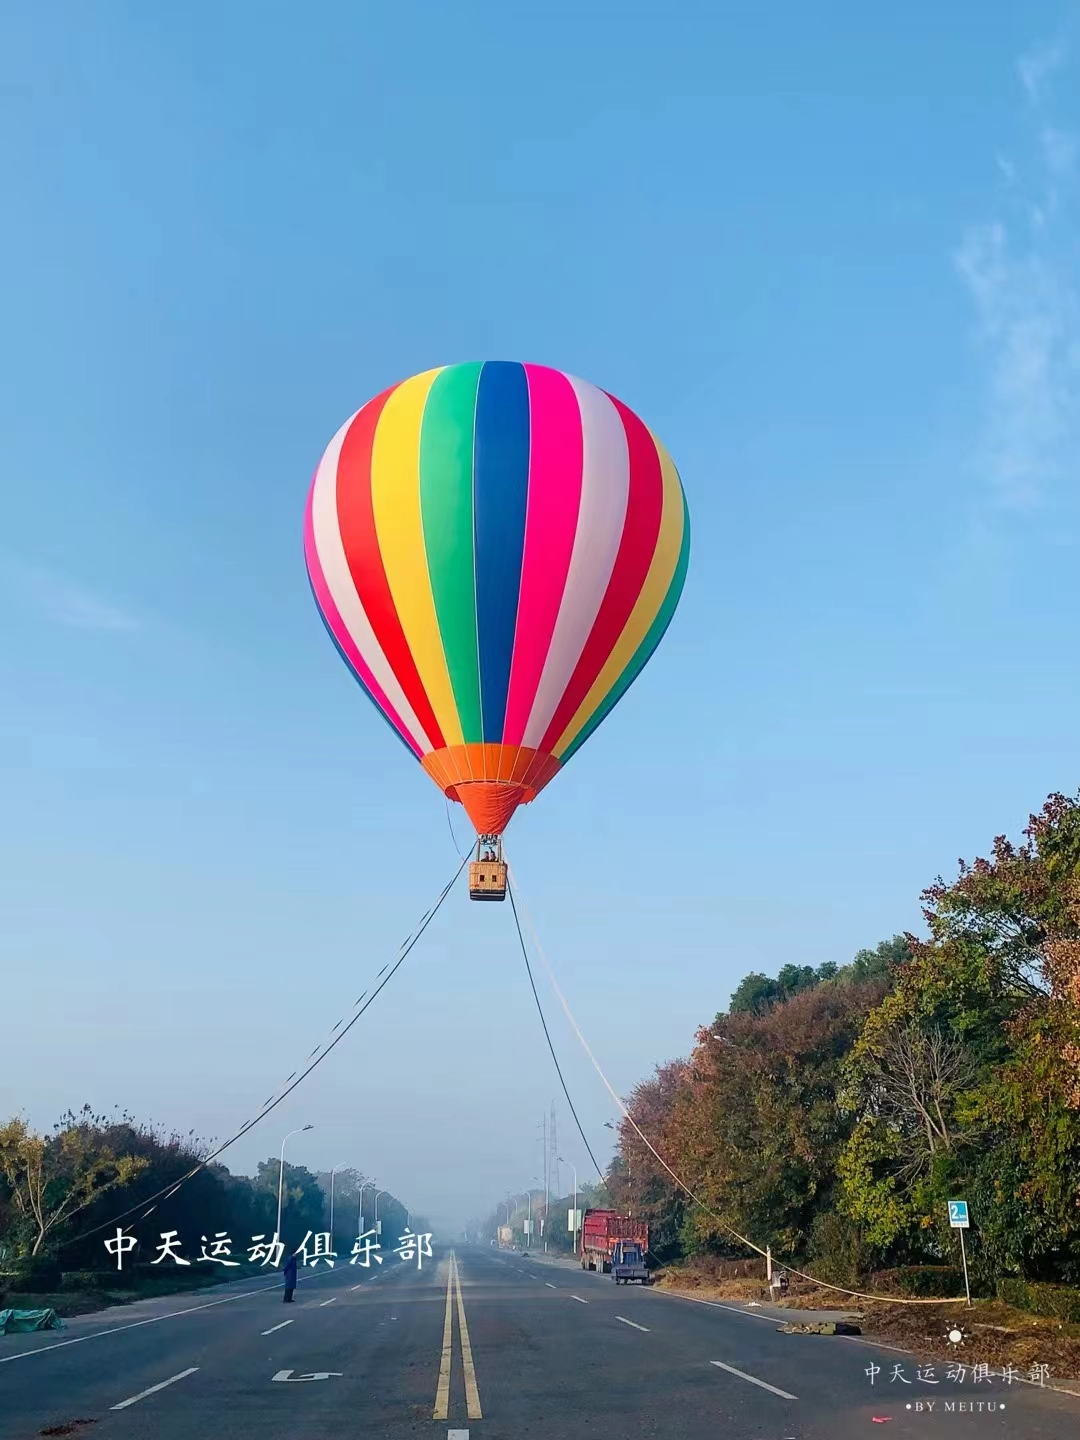 ZT一7(四人球) 批发价：2.88万-四人球-热气球租赁,景区载人观光热气球,商用广告热气球,江苏中天航空装备有限公司